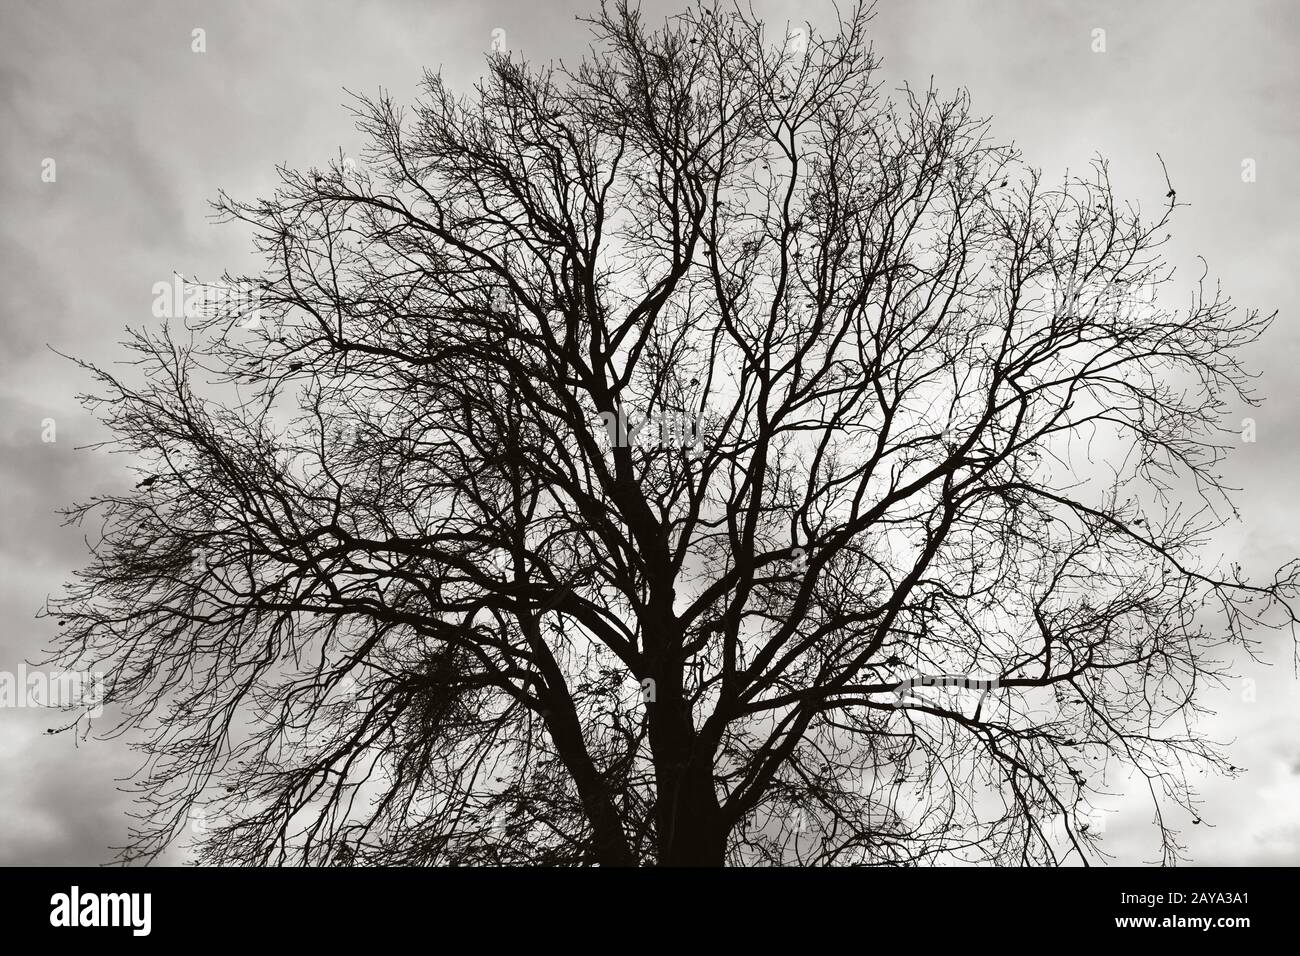 tree against moody sky Stock Photo